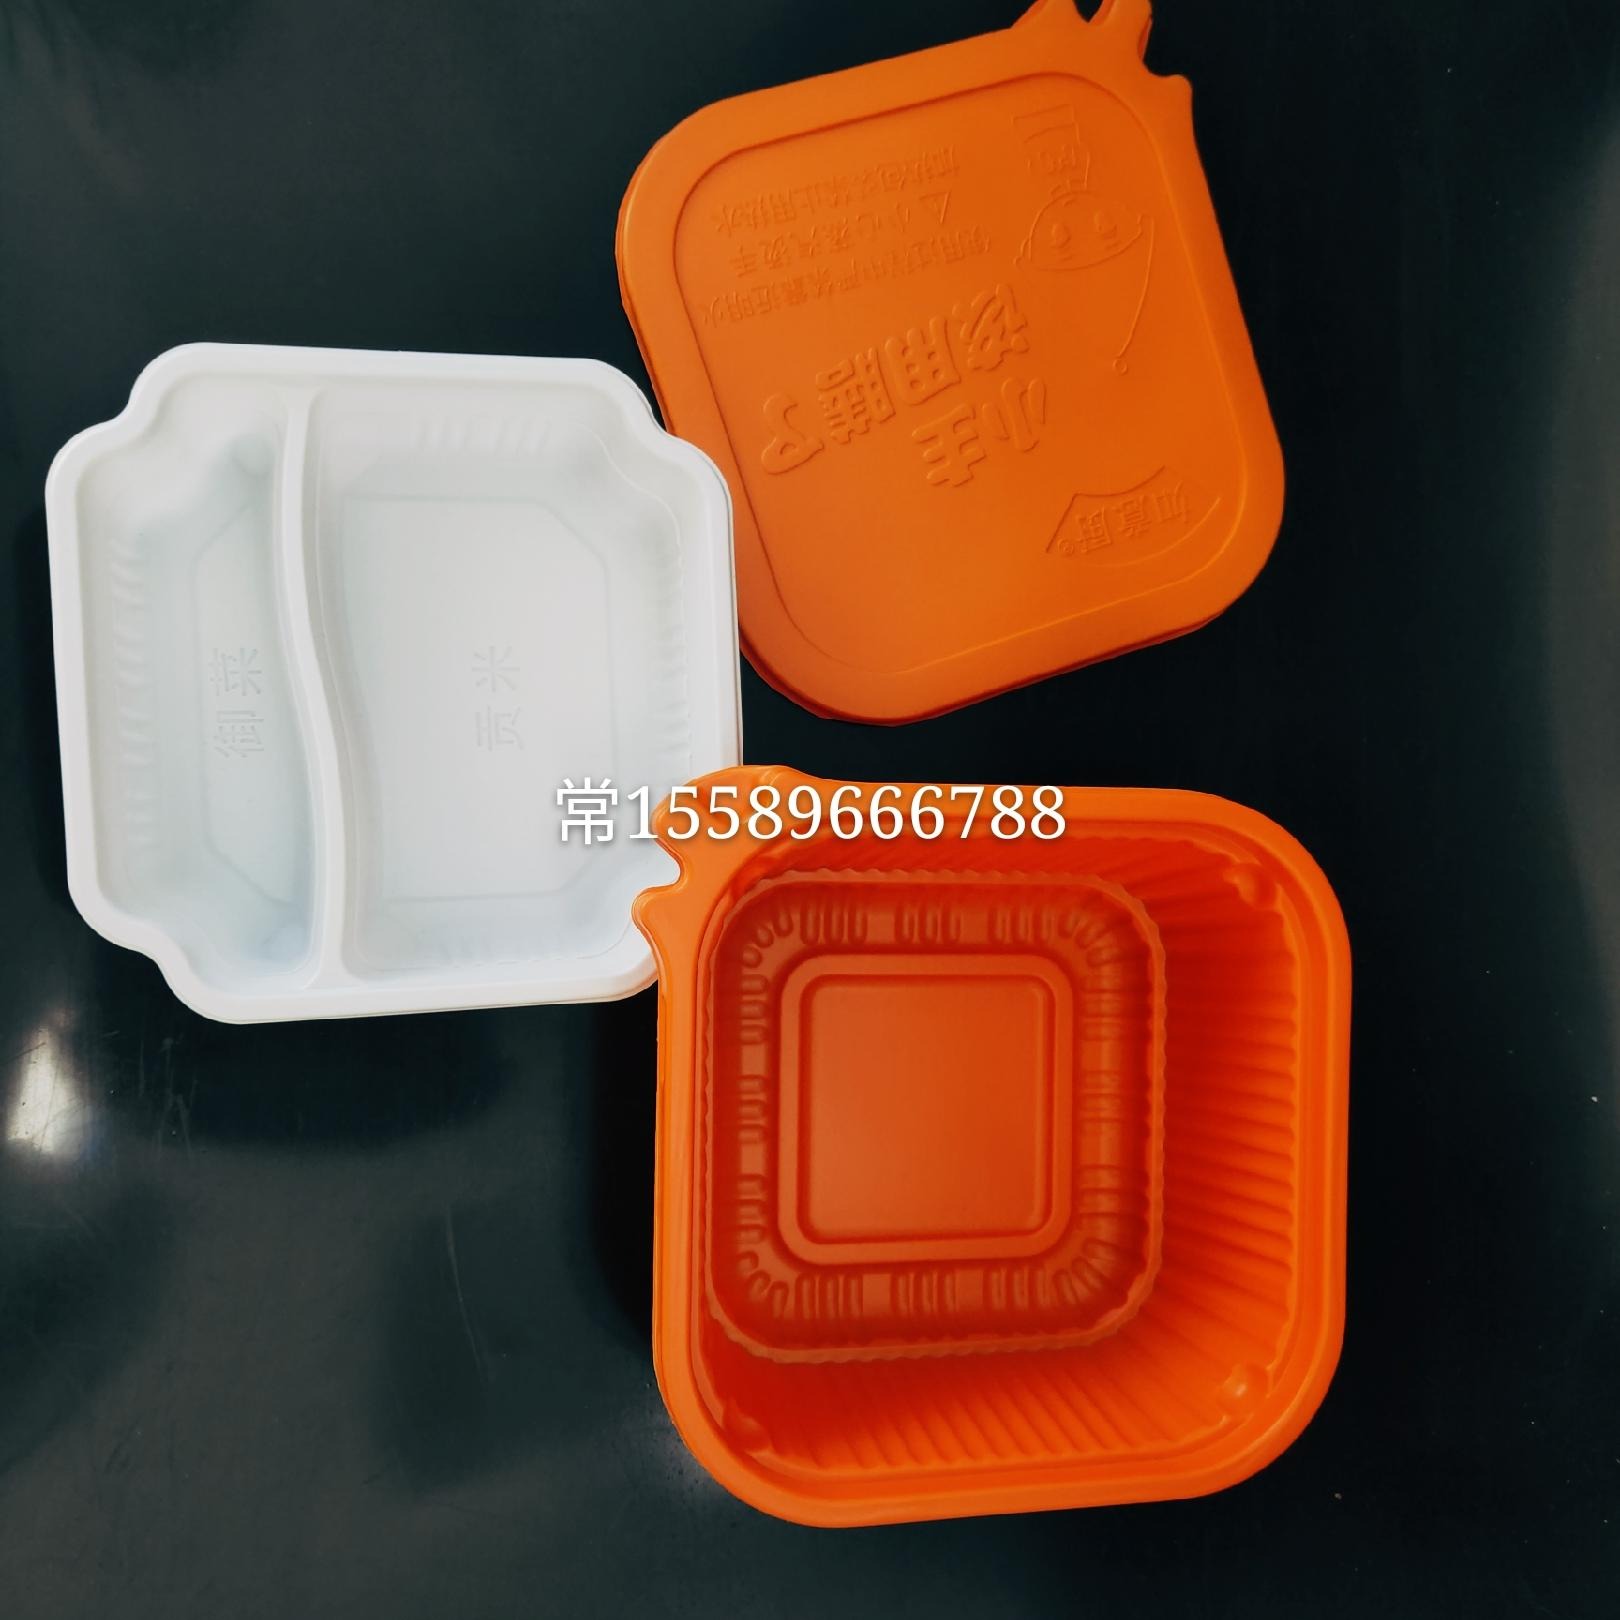 厂家直供自加热火锅塑料碗  方便菜自加热锅  可耐高温  PP材质WR00049